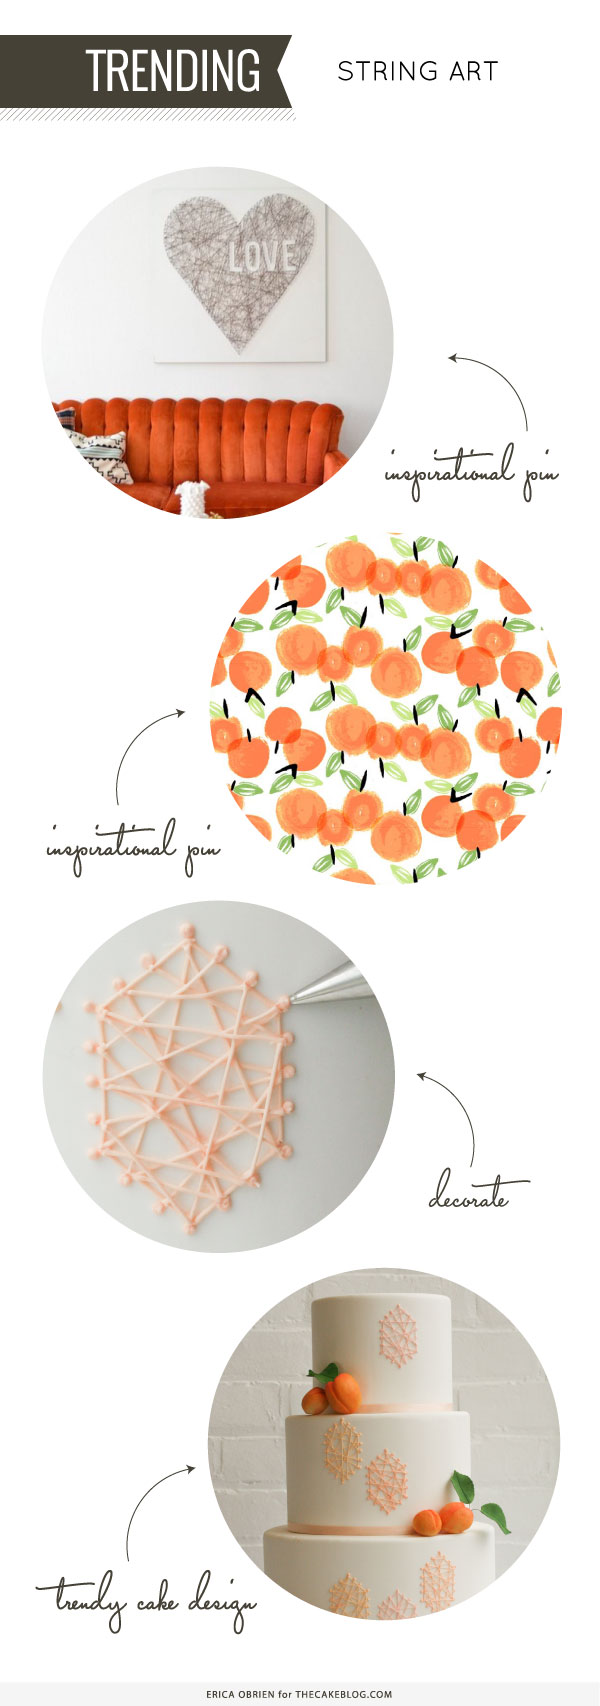 Peach String Art Cake | by Erica OBrien for TheCakeBlog.com